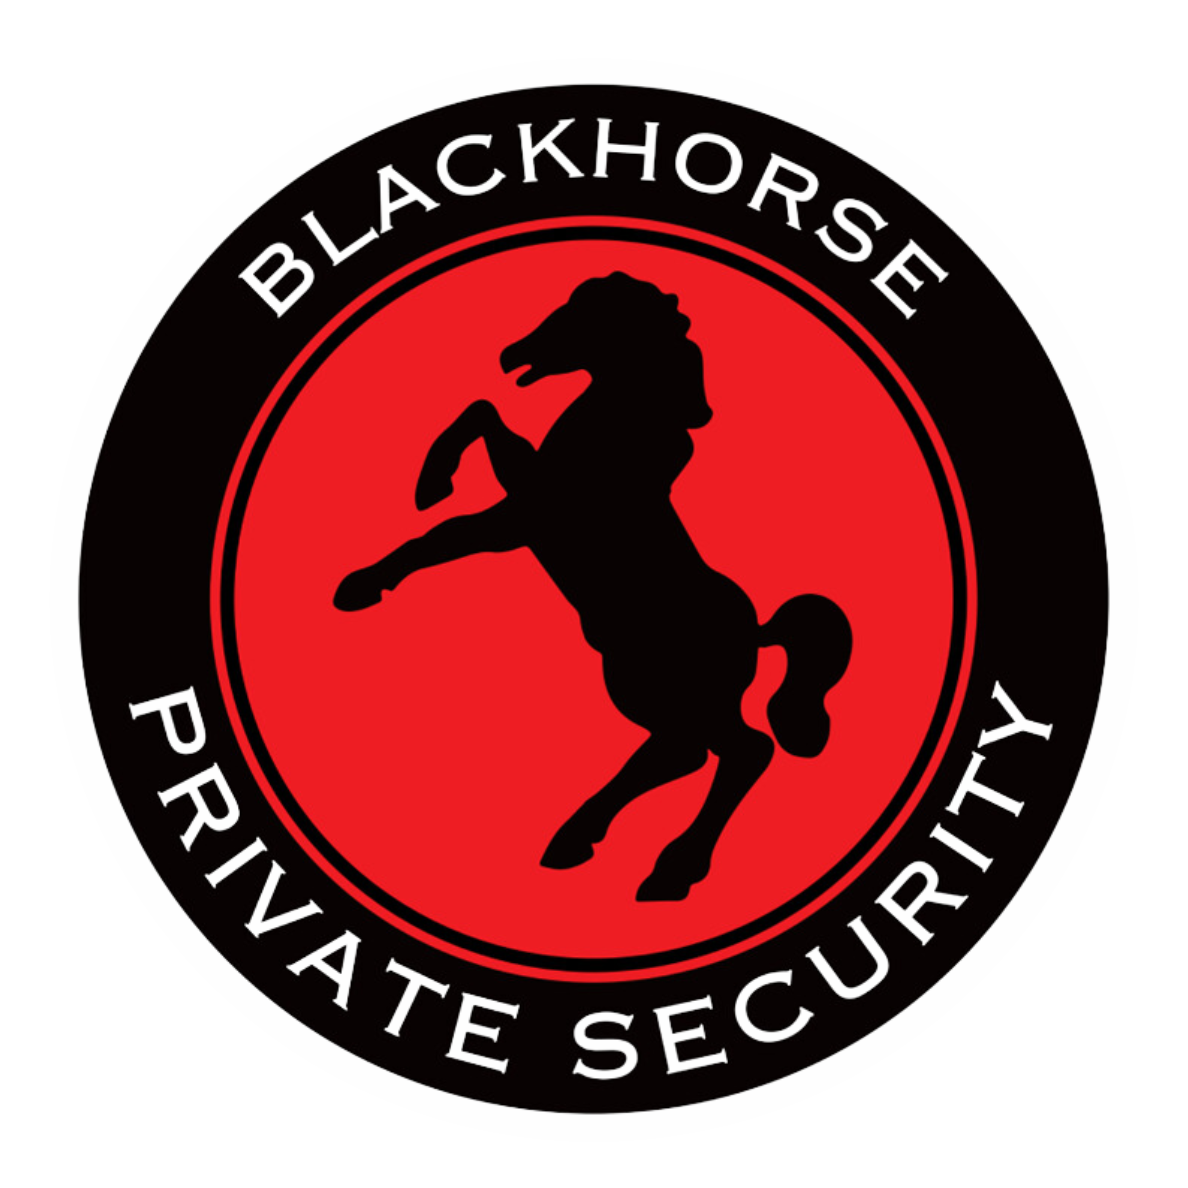 Blackhorse Private Security